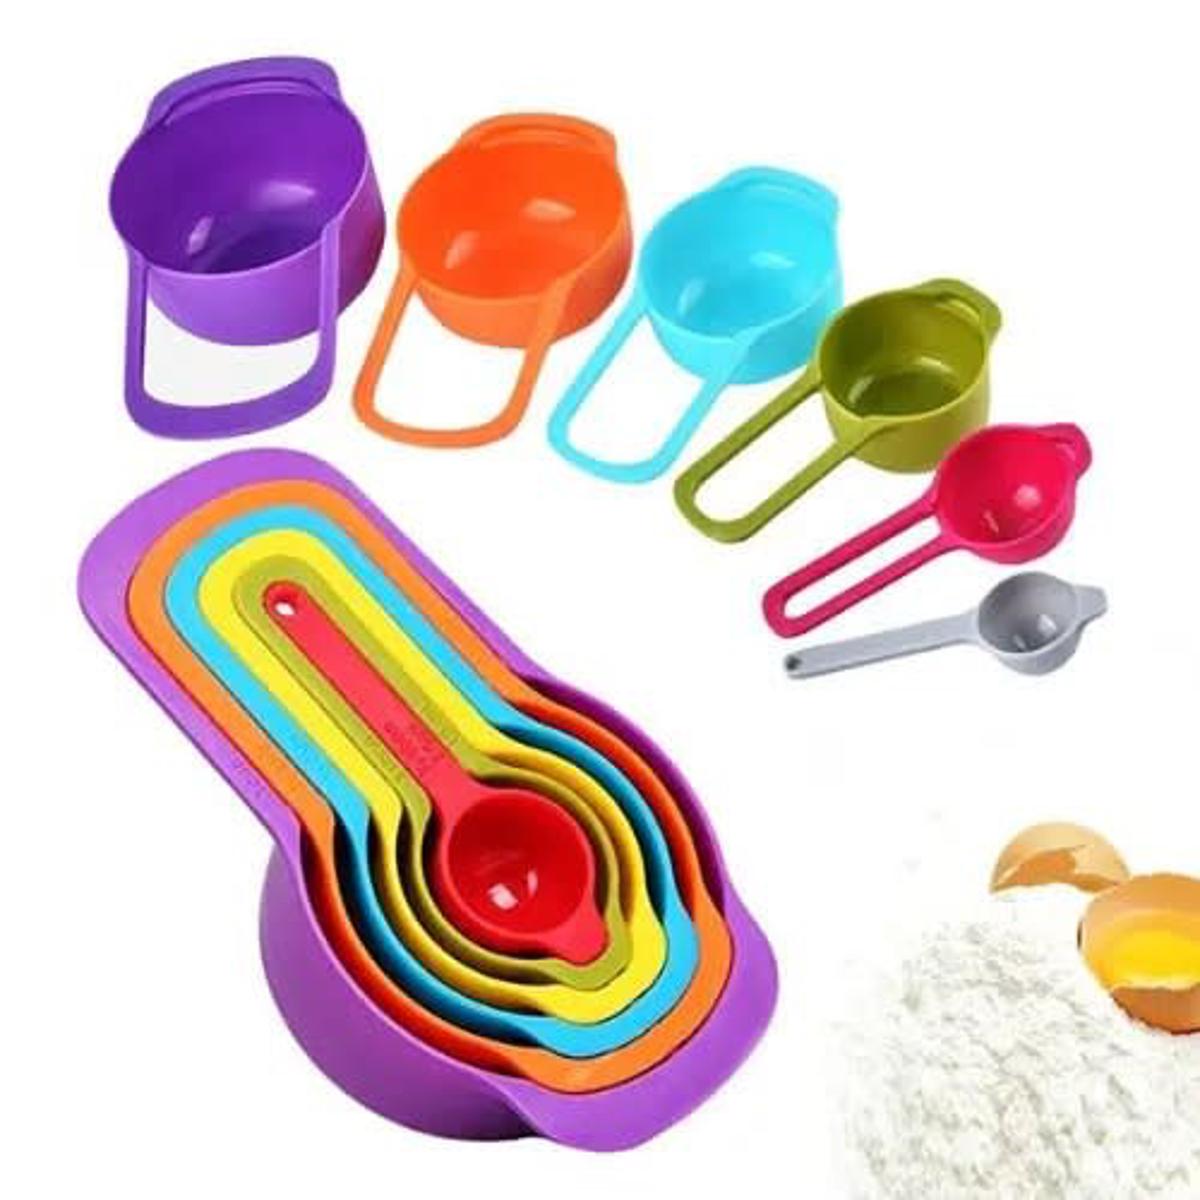 Measuring Cups & Spoons Set 6 Pcs Multi Color